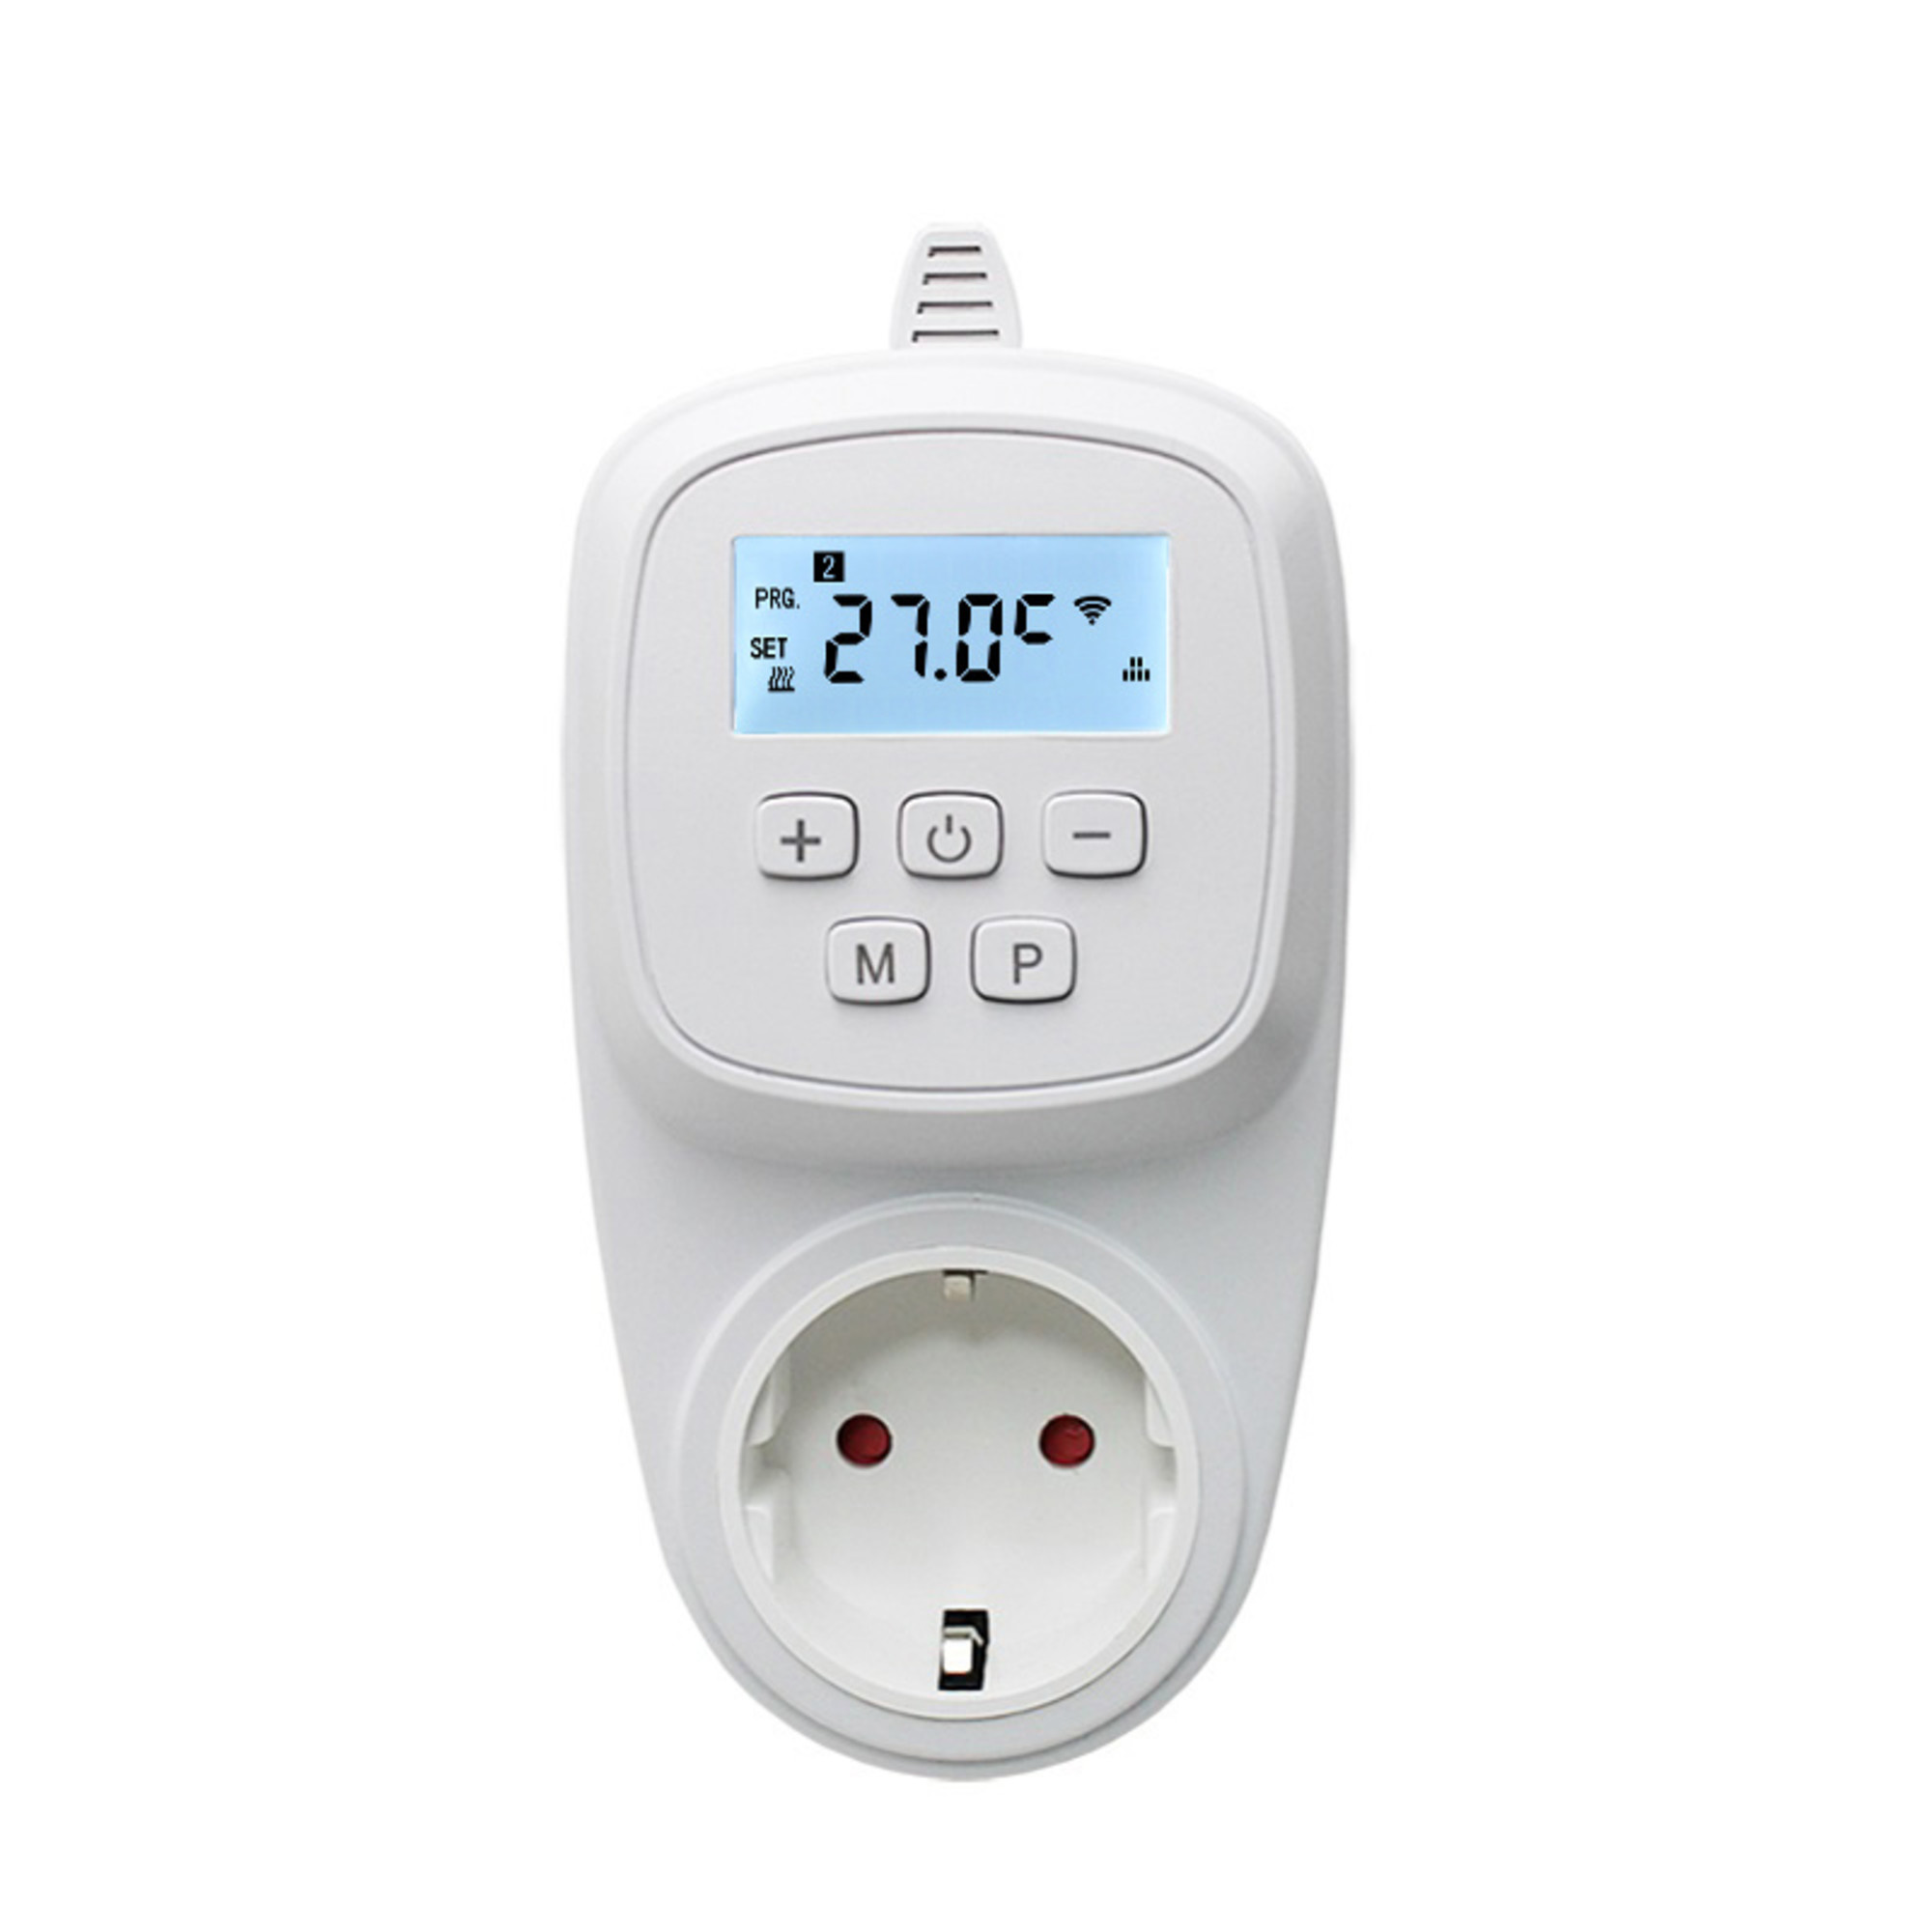 Plug-in eenvoudige thermostaat elektrische verwarming - Infraroodverwarming kopen? Laagste prijsgarantie!